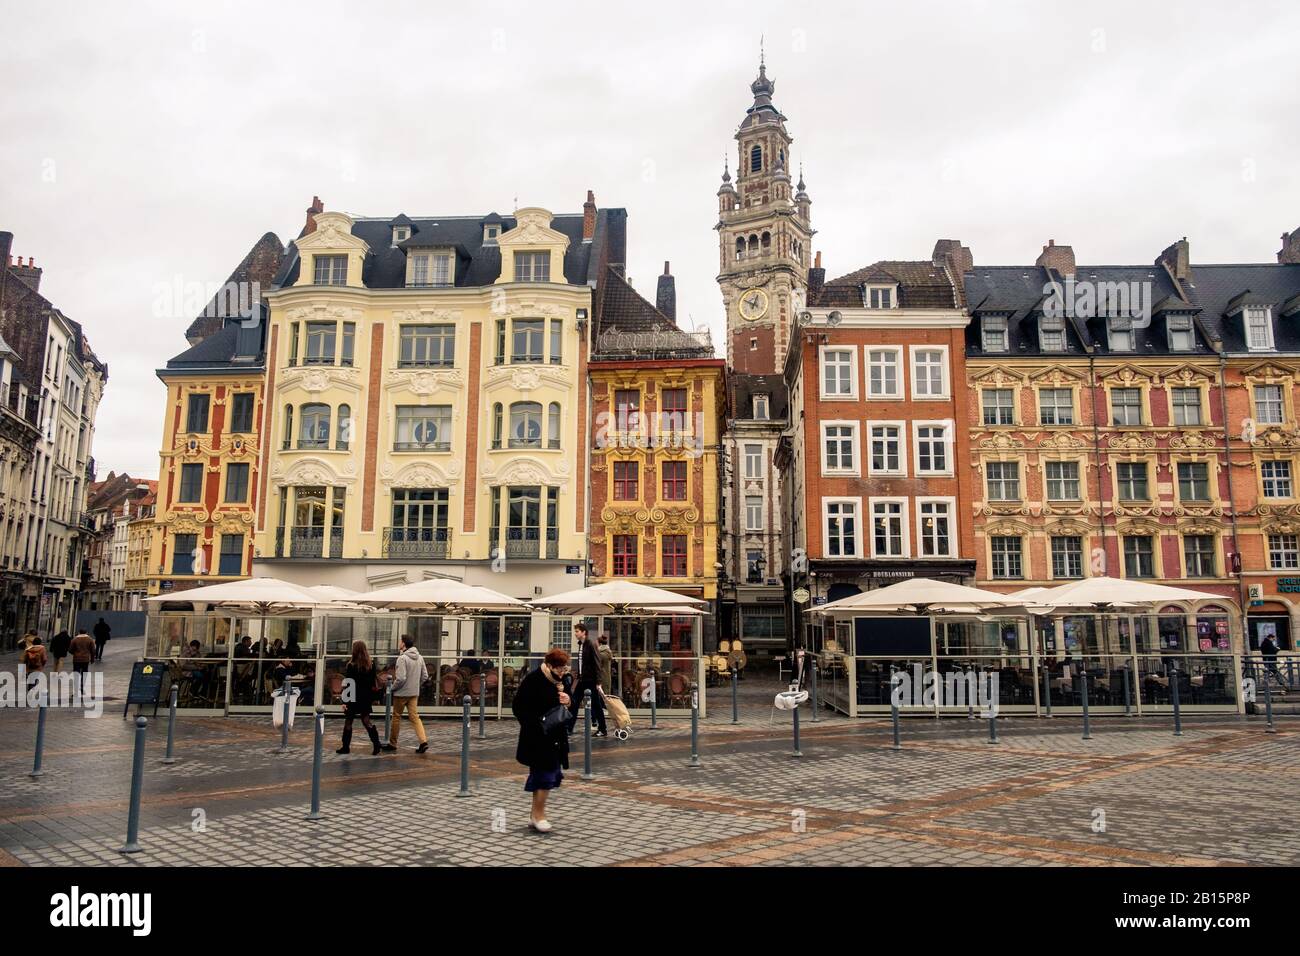 Selbst an einem regnerischen Tag verleihen atemberaubende Fassaden vom 17. Bis 20. Jahrhundert dem Hauptplatz von Lille Farbe. Eine alte Dame durchquert diesen 'Grand Place'. Stockfoto